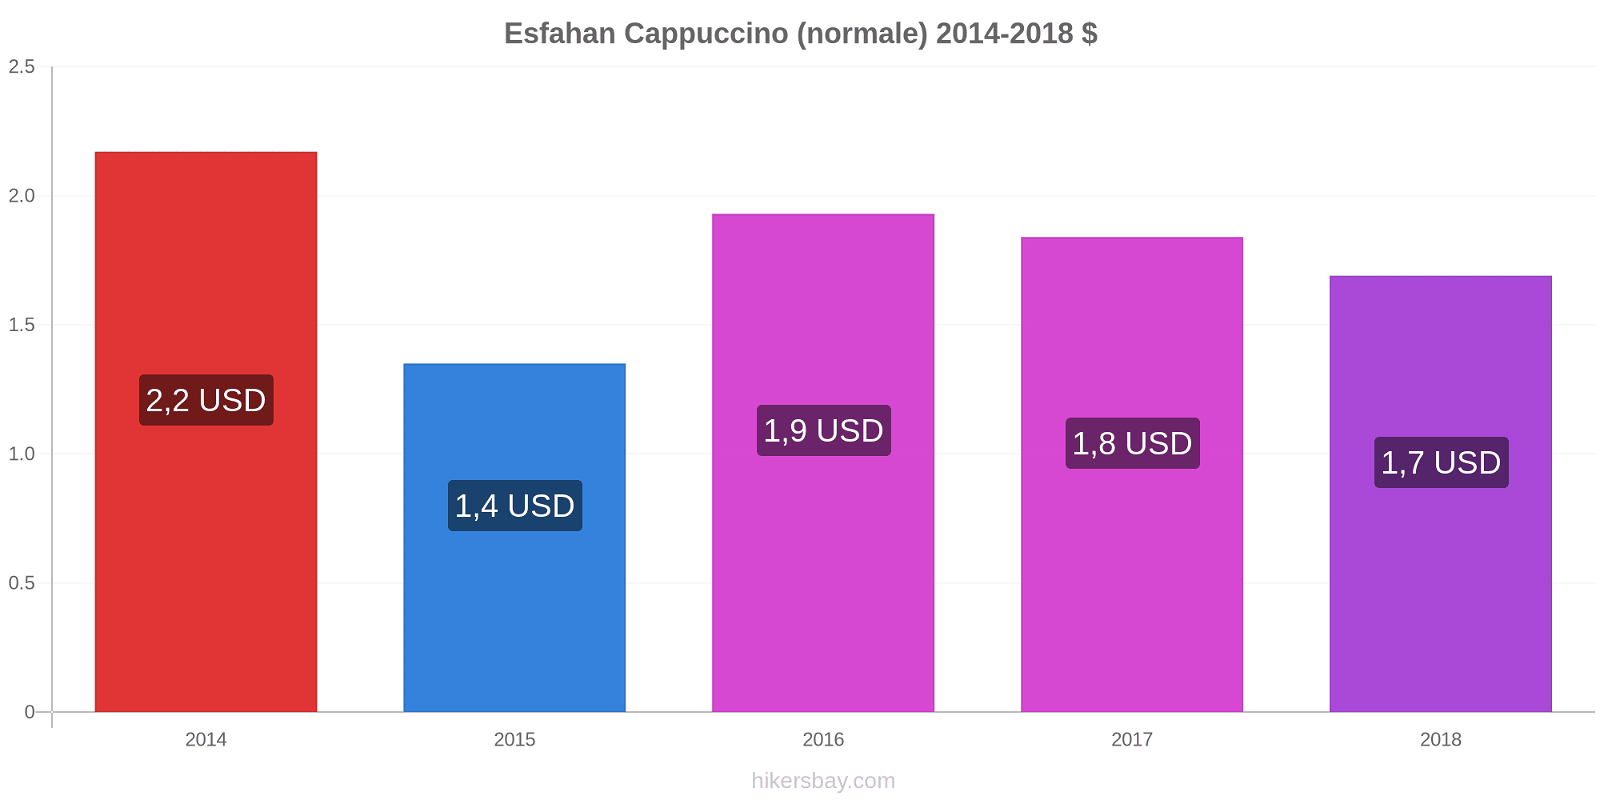 Esfahan variazioni di prezzo Cappuccino (normale) hikersbay.com